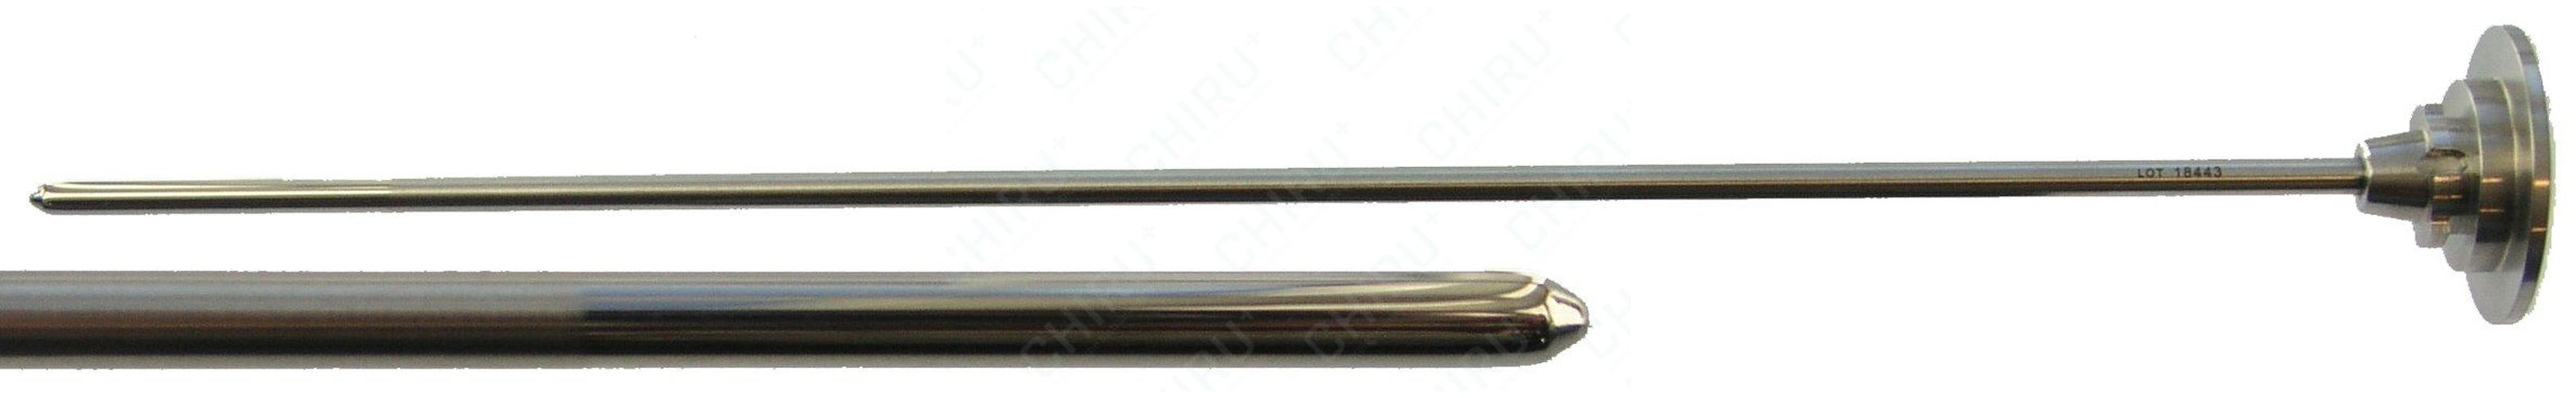 Obturator, konisch, 187.5 mm, Ø 2.7 mm 